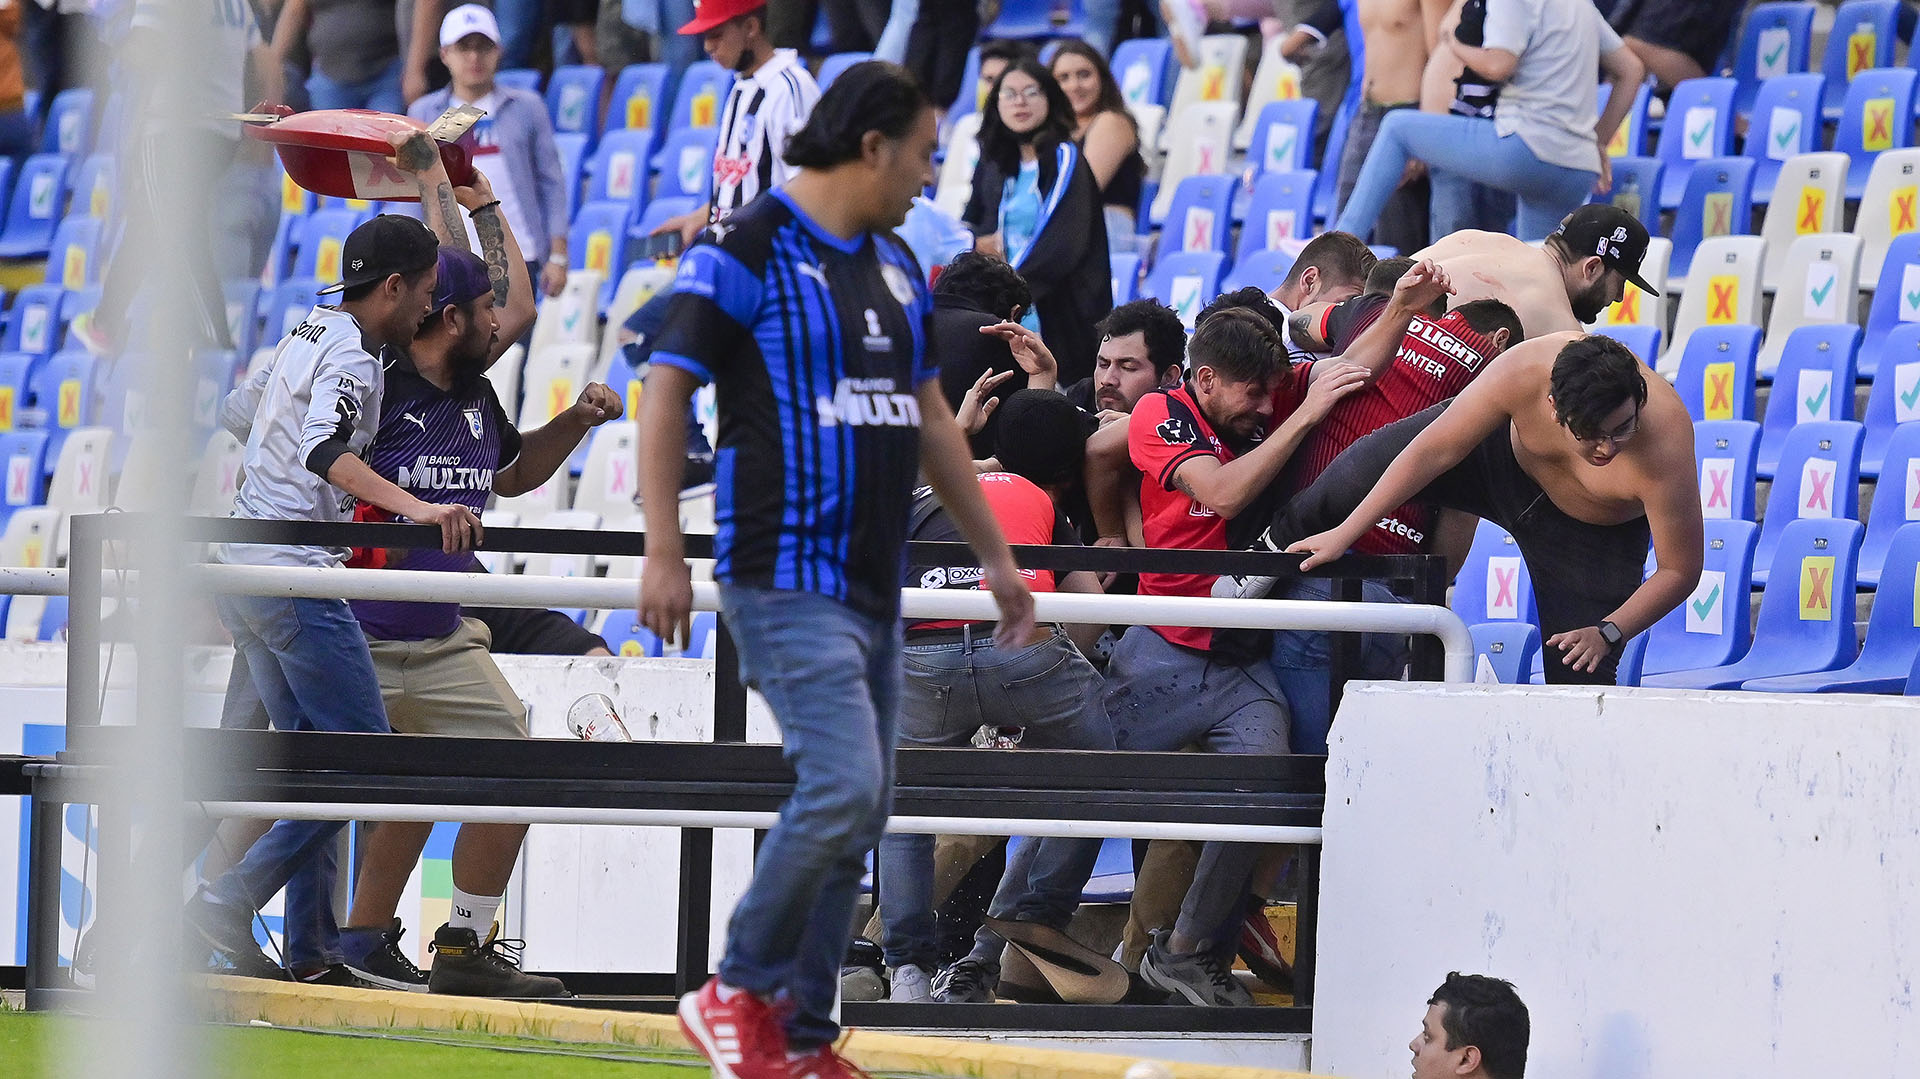 Aficionados del Querétaro agredieron a los seguidores de Atlas durante un juego correspondiente a la jornada 9 del Torneo Clausura 2022 de la Liga MX del fútbol mexicano en el estadio Corregidora de la ciudad de Querétaro. (FOTO: EFE/Sebastián Laureano Miranda)
